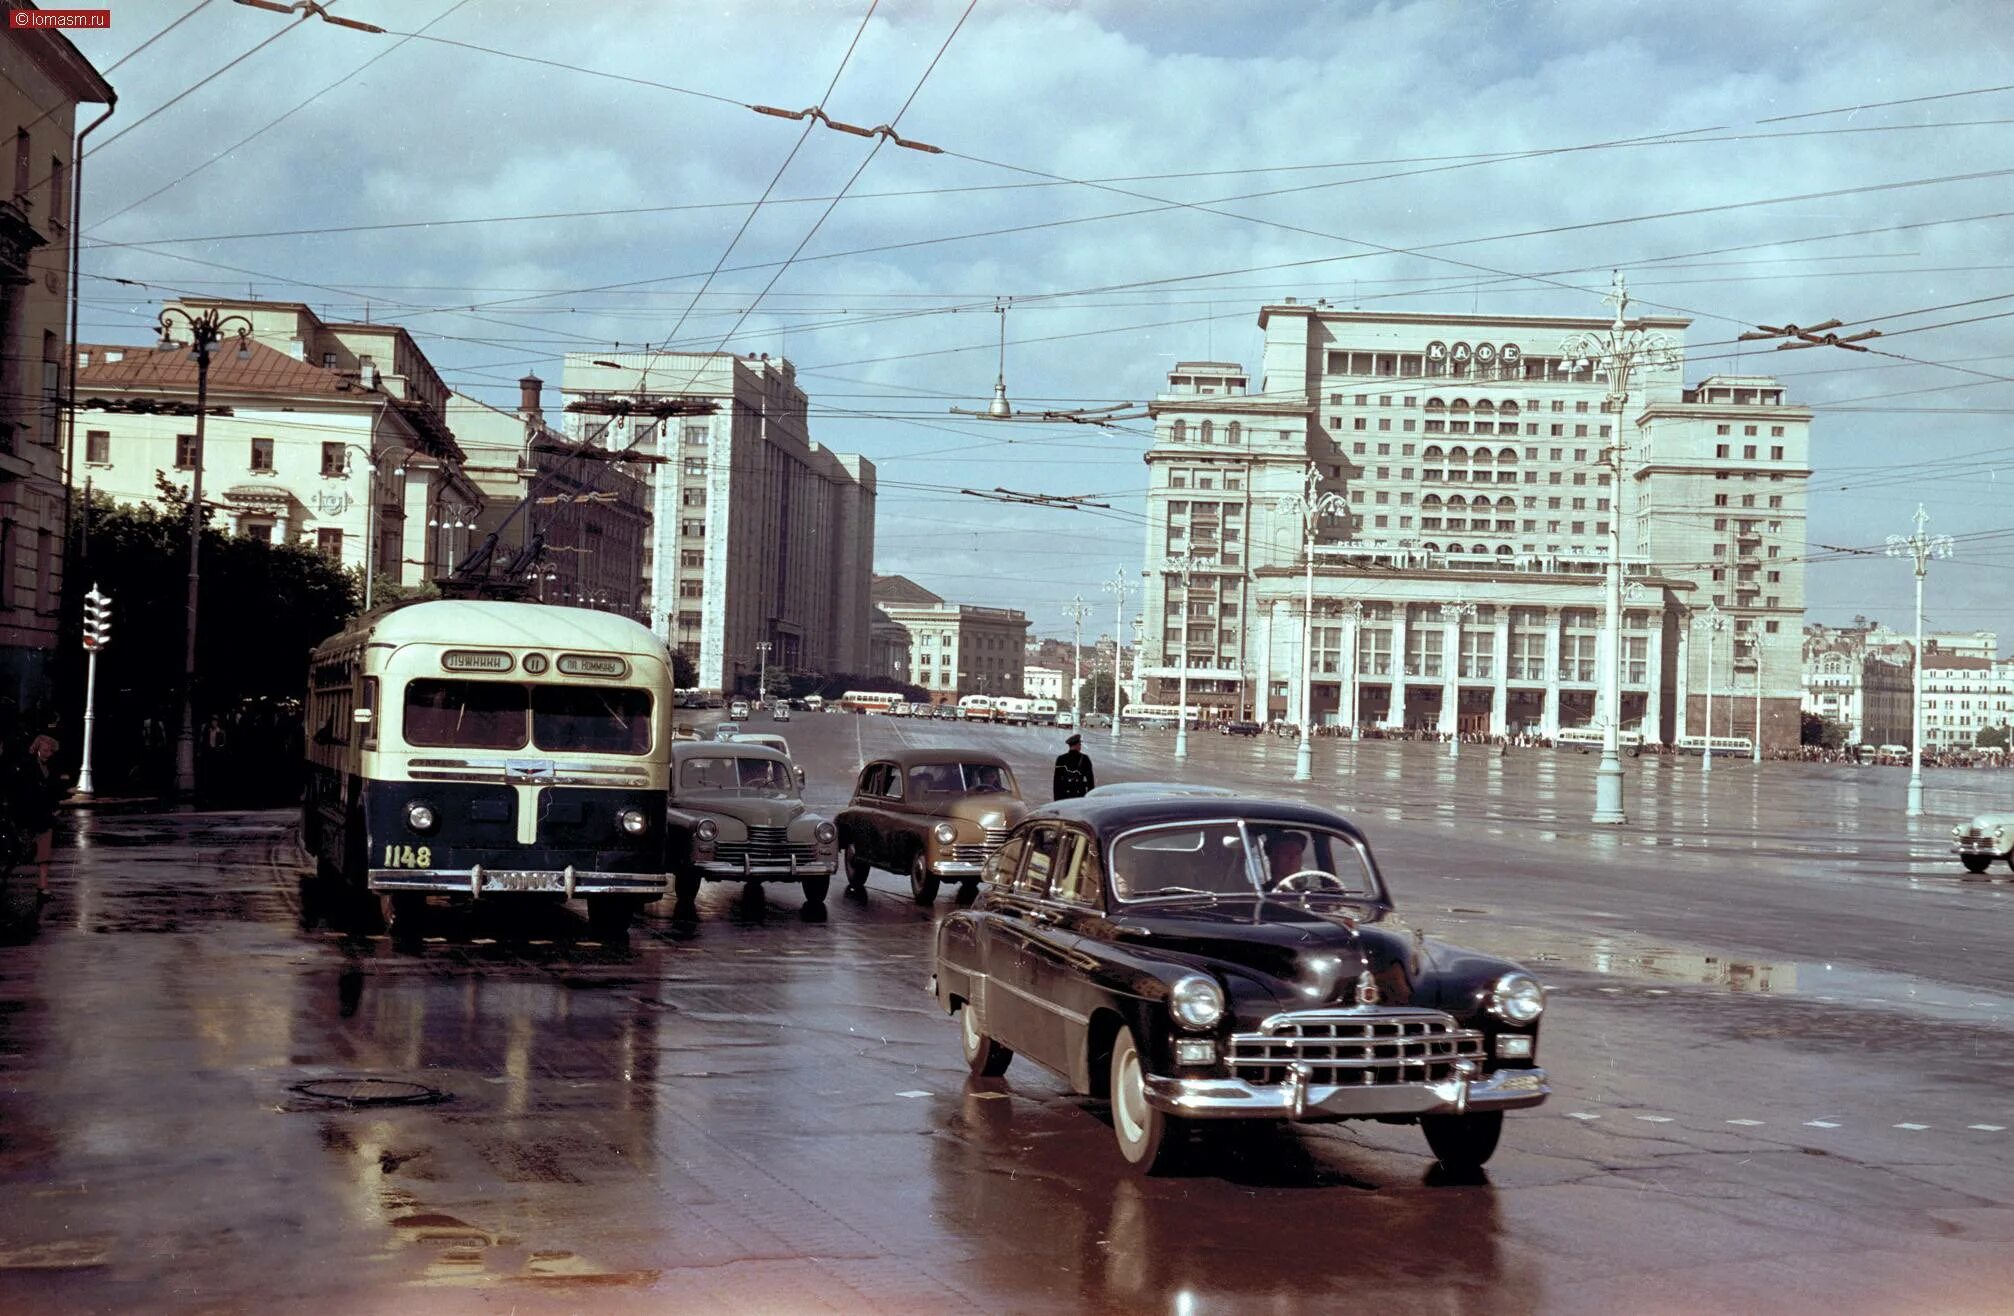 Ссср 50 х. Москва 1956 год. Москва в 50-е годы. Семен Фридлянд МГУ. Москва в 1950-е годы.